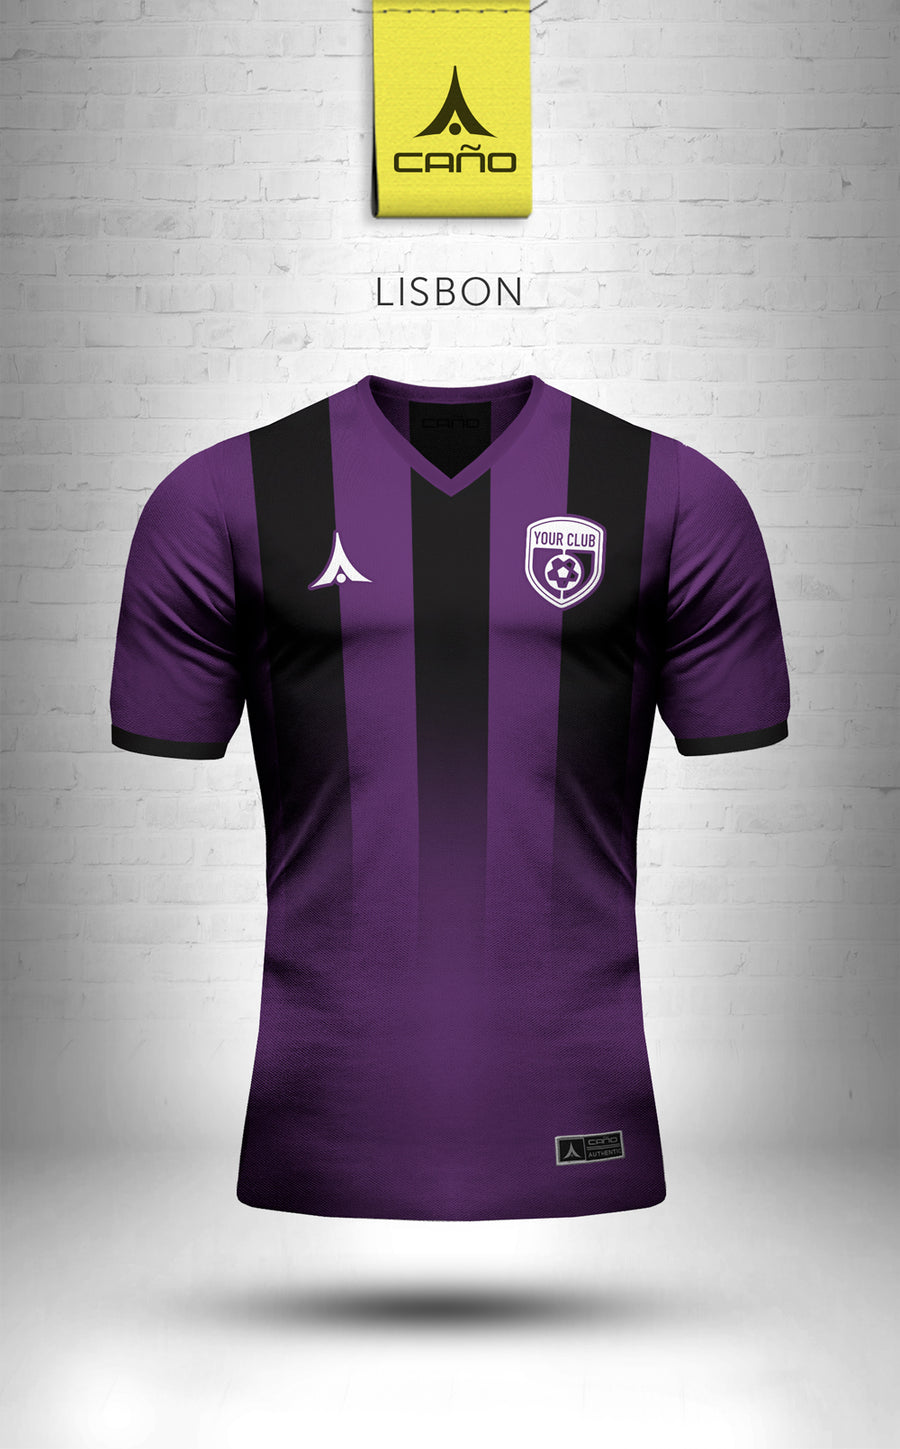 Lisbon in purple/black